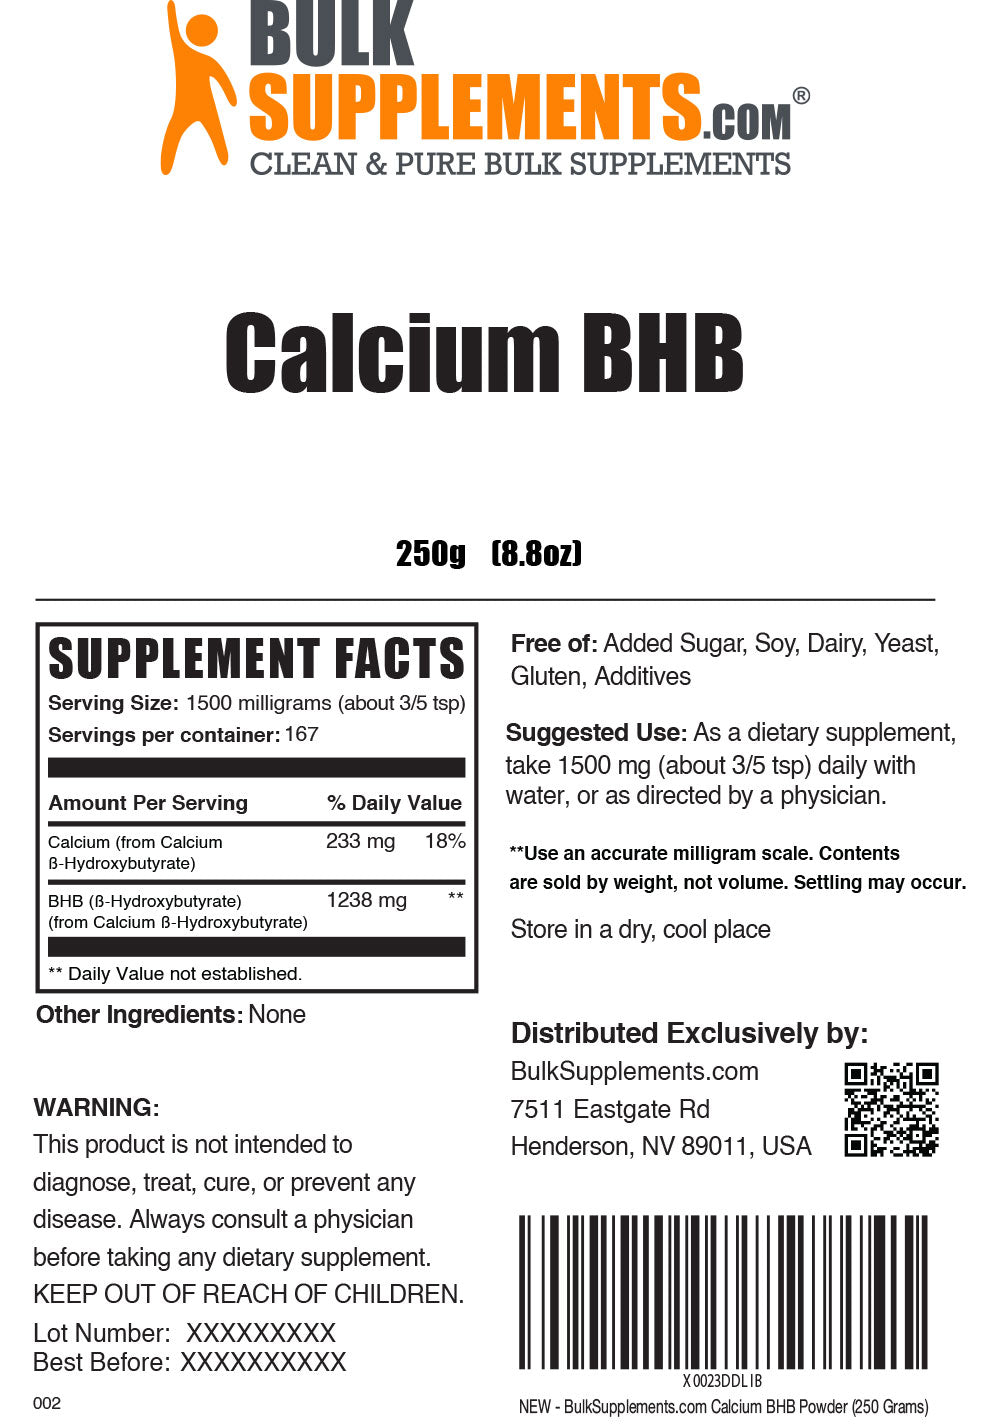 Calcium BHB powder label 250g